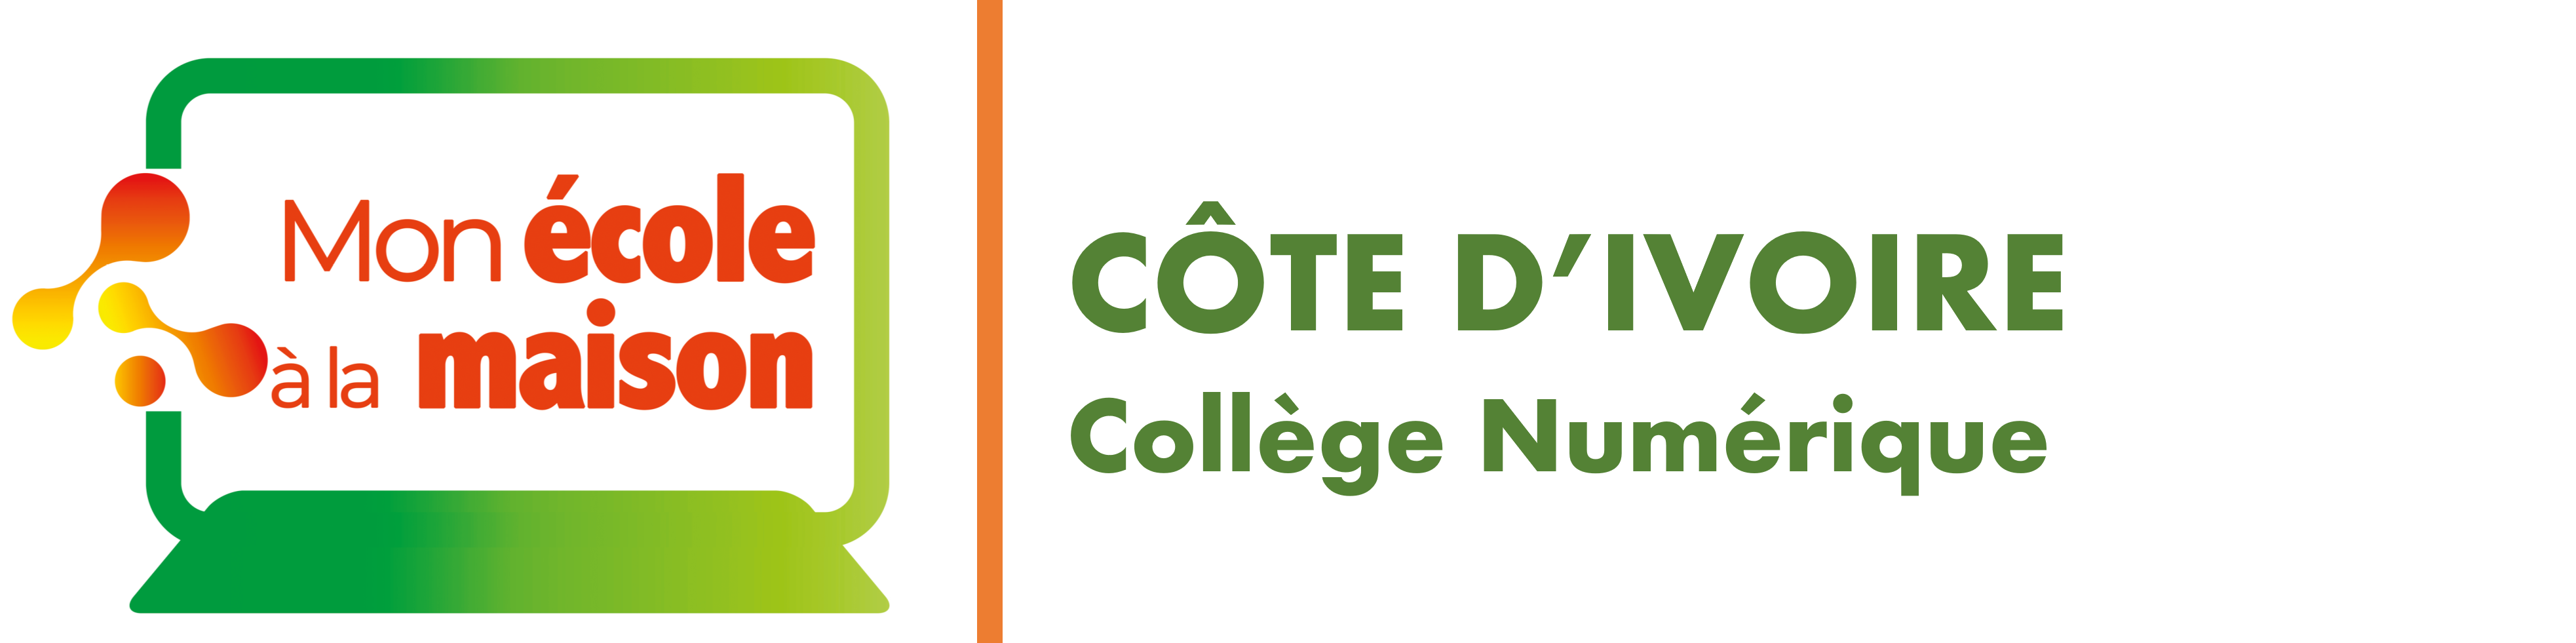 CÔTE D'IVOIRE Collège Numérique